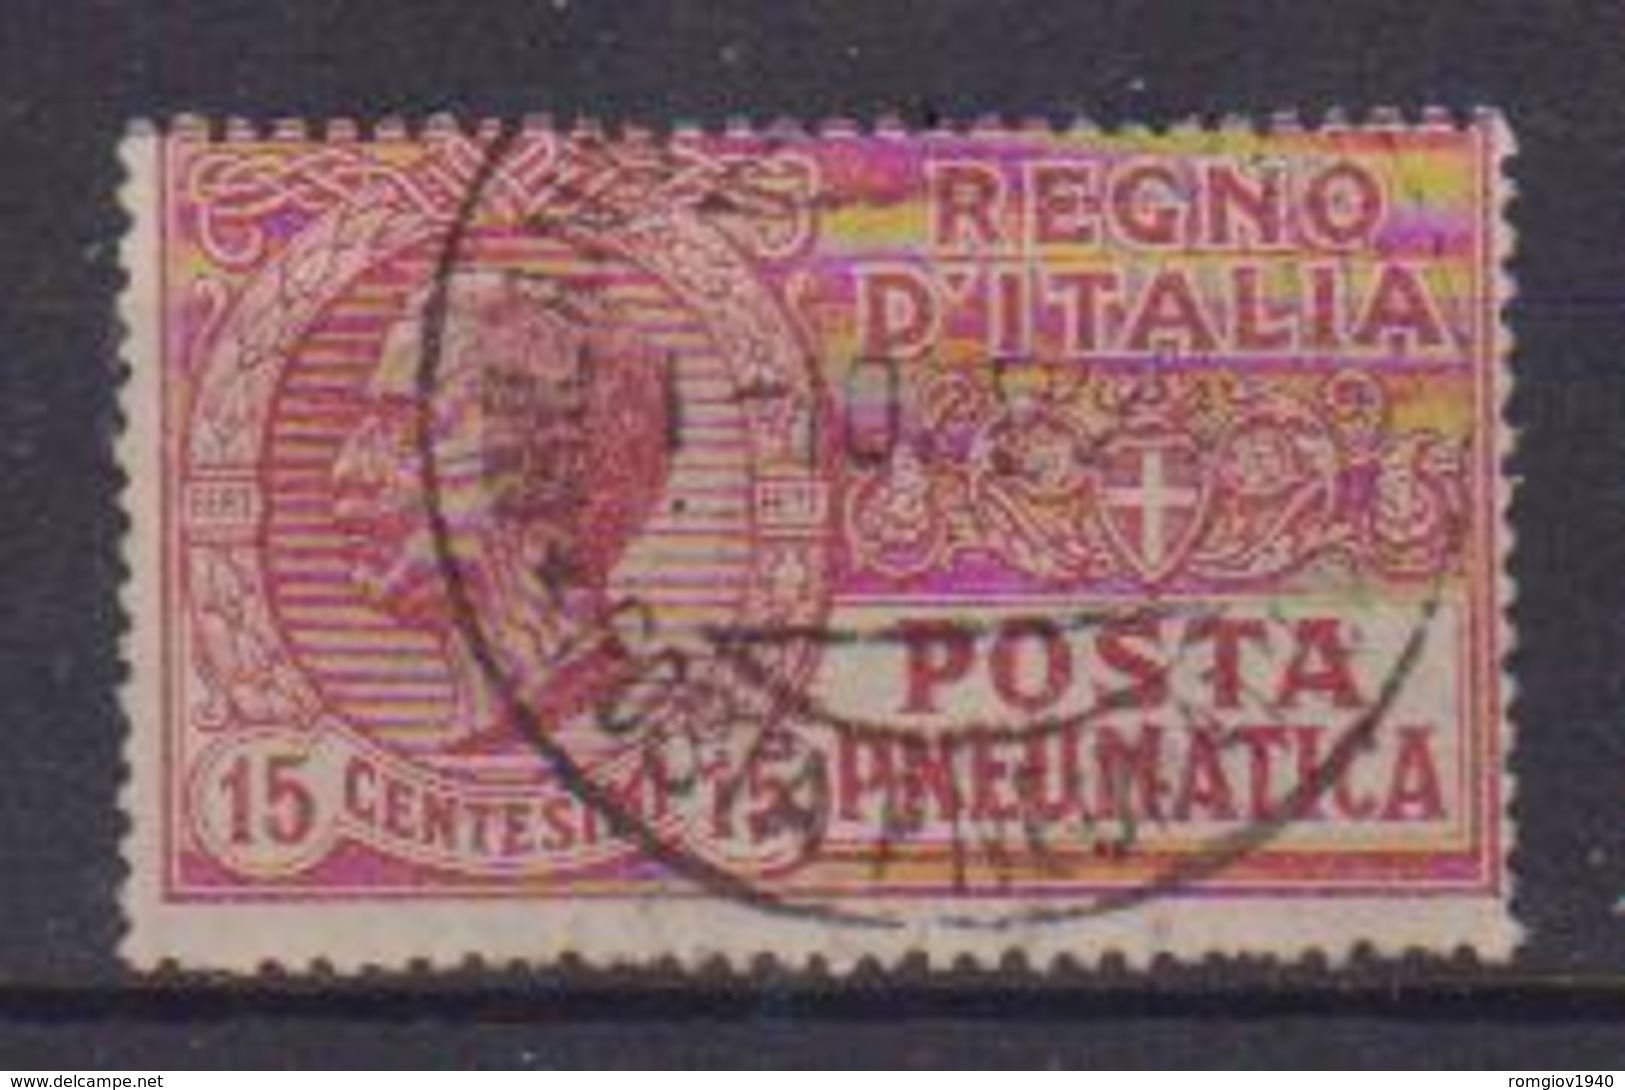 REGNO D'ITALIA POSTA PNEUMATICA 1927 TIPO DEL 1913-23  FILIGRANA CORONA  SASS. 12  USATO VF - Pneumatische Post